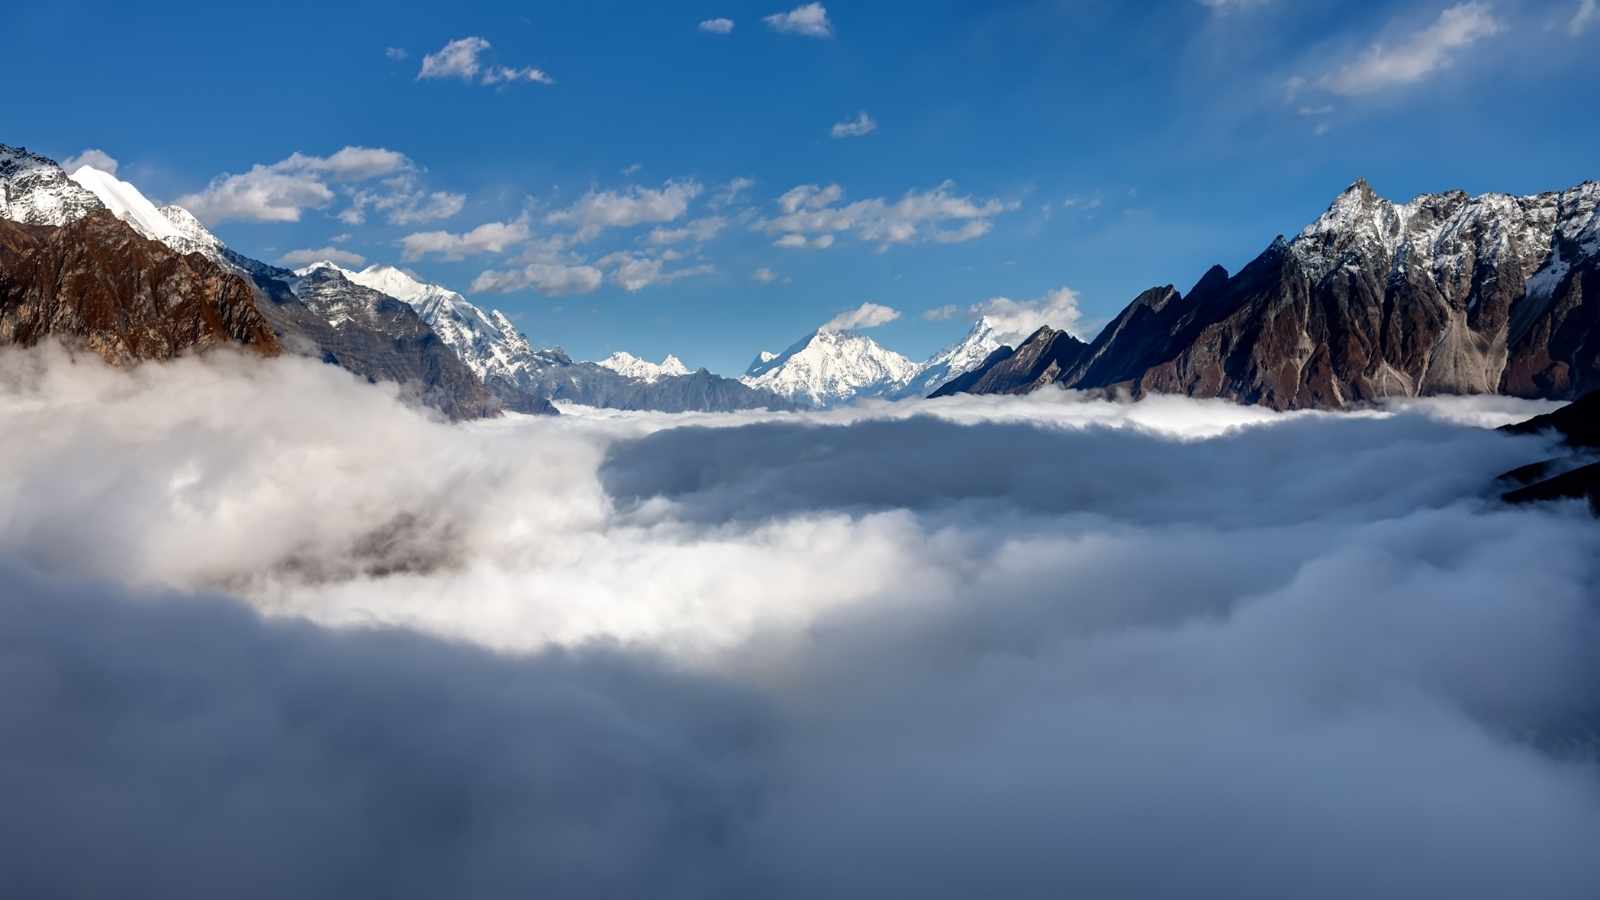 Manaslu valley covered with clouds on Manaslu circuit trek in Nepal